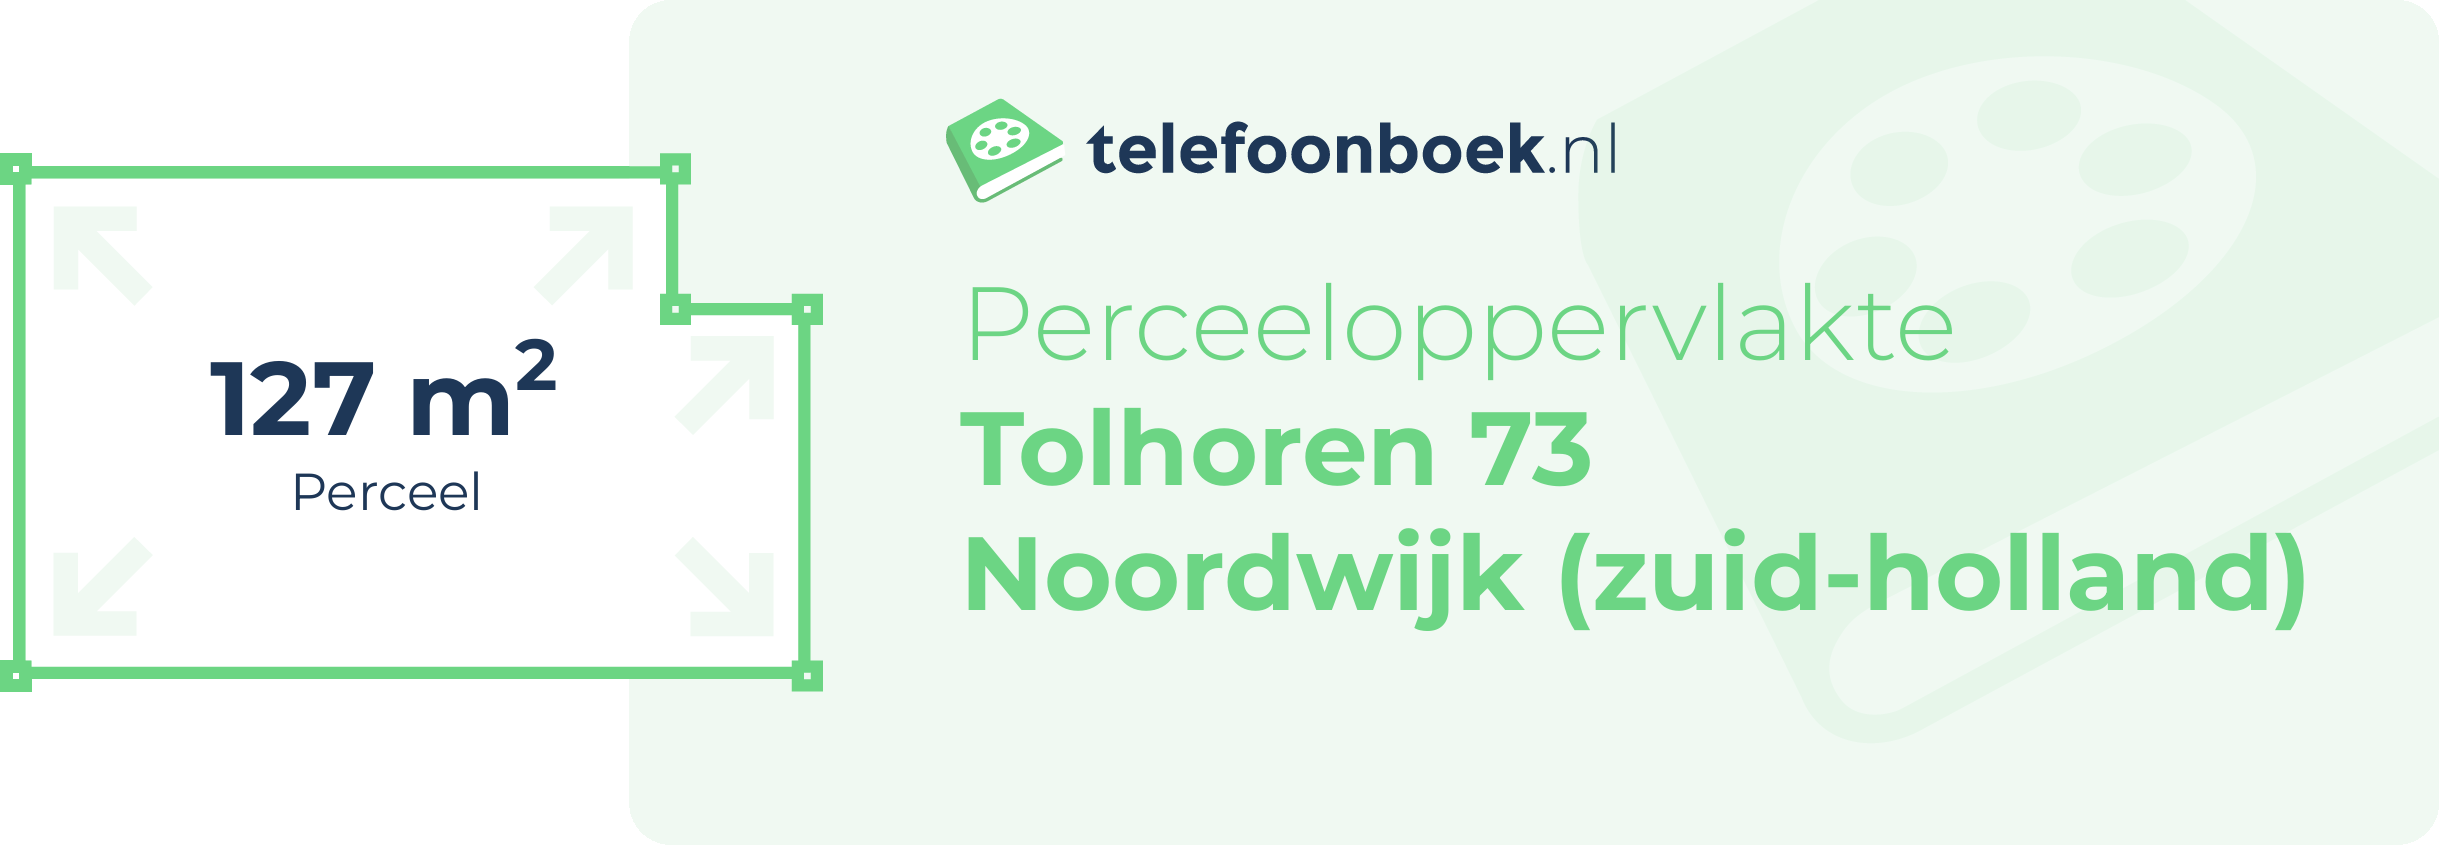 Perceeloppervlakte Tolhoren 73 Noordwijk (Zuid-Holland)